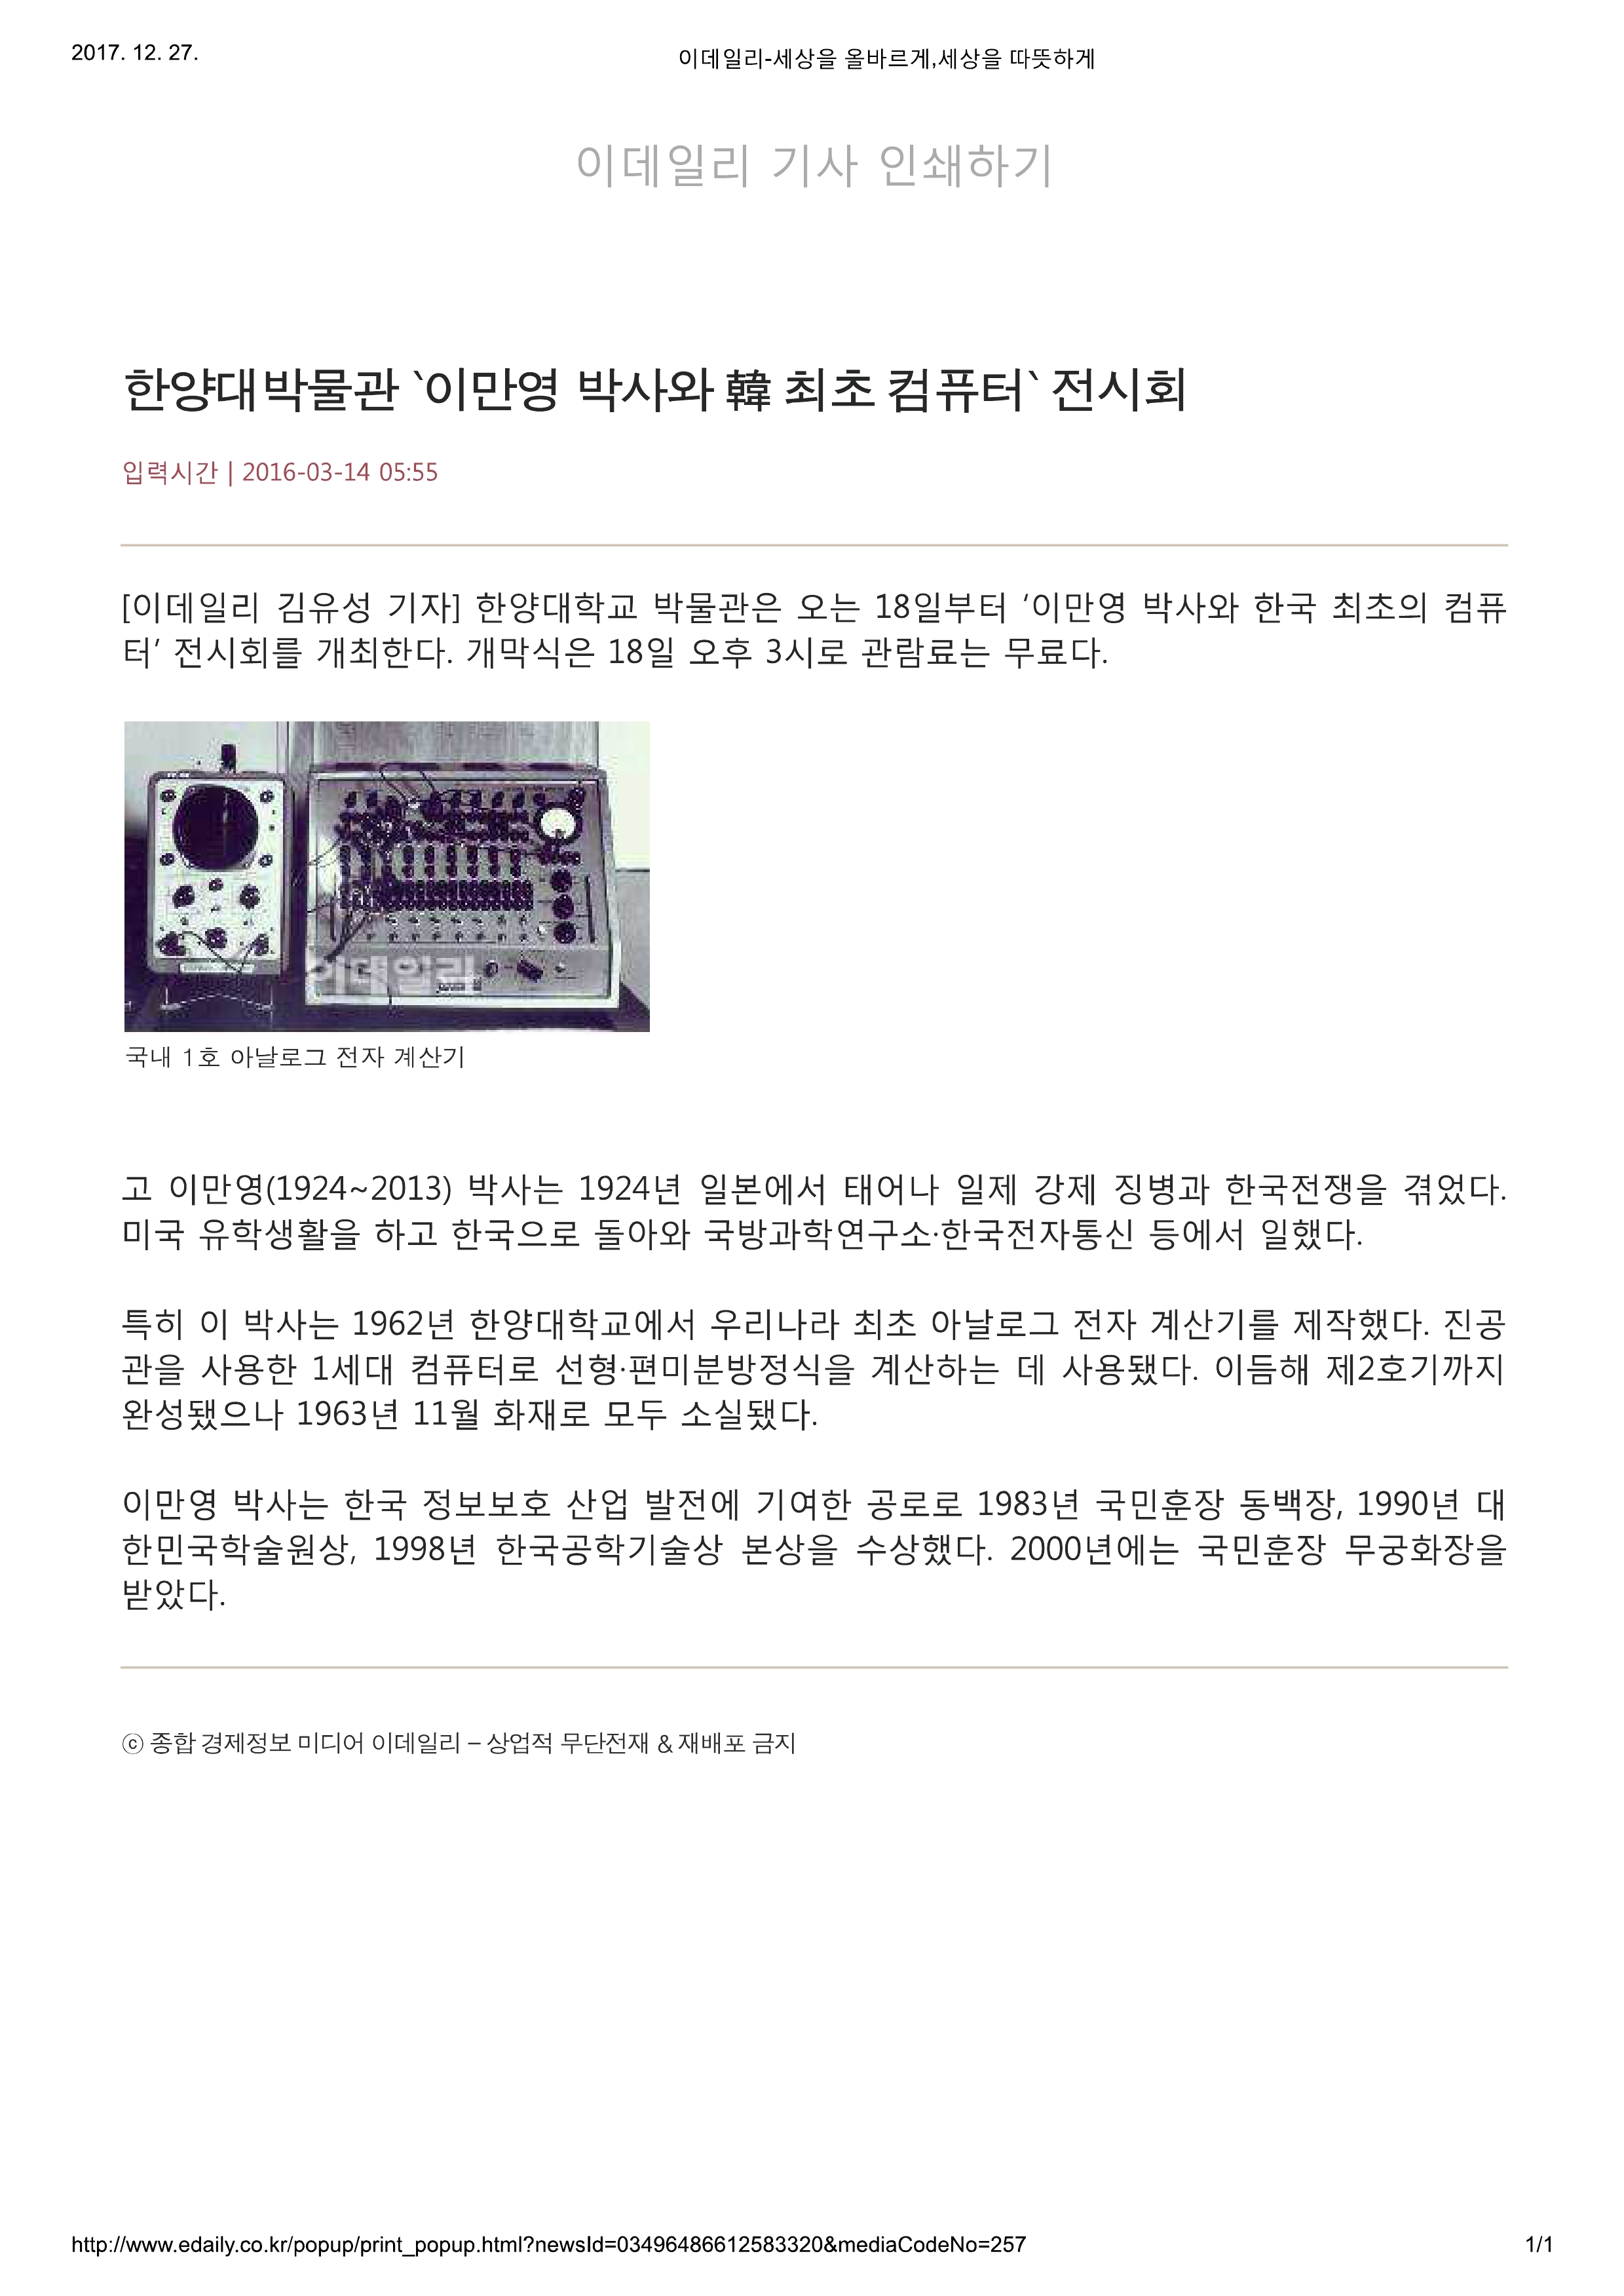 20160314_이데일리_한양대박물관 `이만영 박사와 韓 최초 컴퓨터` 전시회-1.jpg